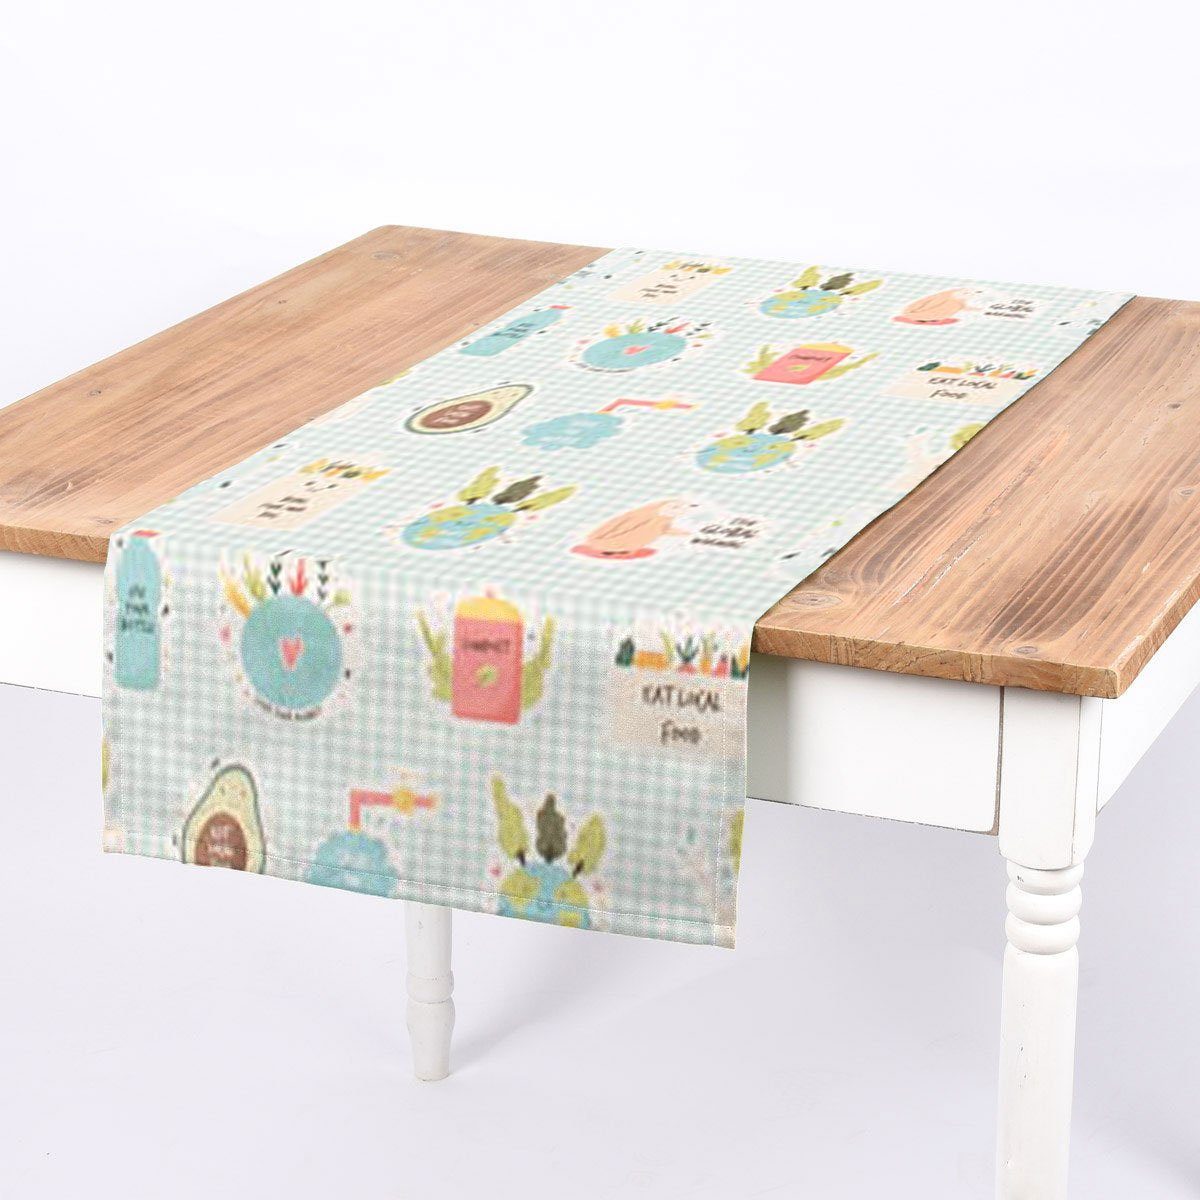 Nachhaltigkeit Tischläufer SCHÖNER Eco handmade LEBEN. bunt, Tischläufer SCHÖNER LEBEN. Umweltschutz